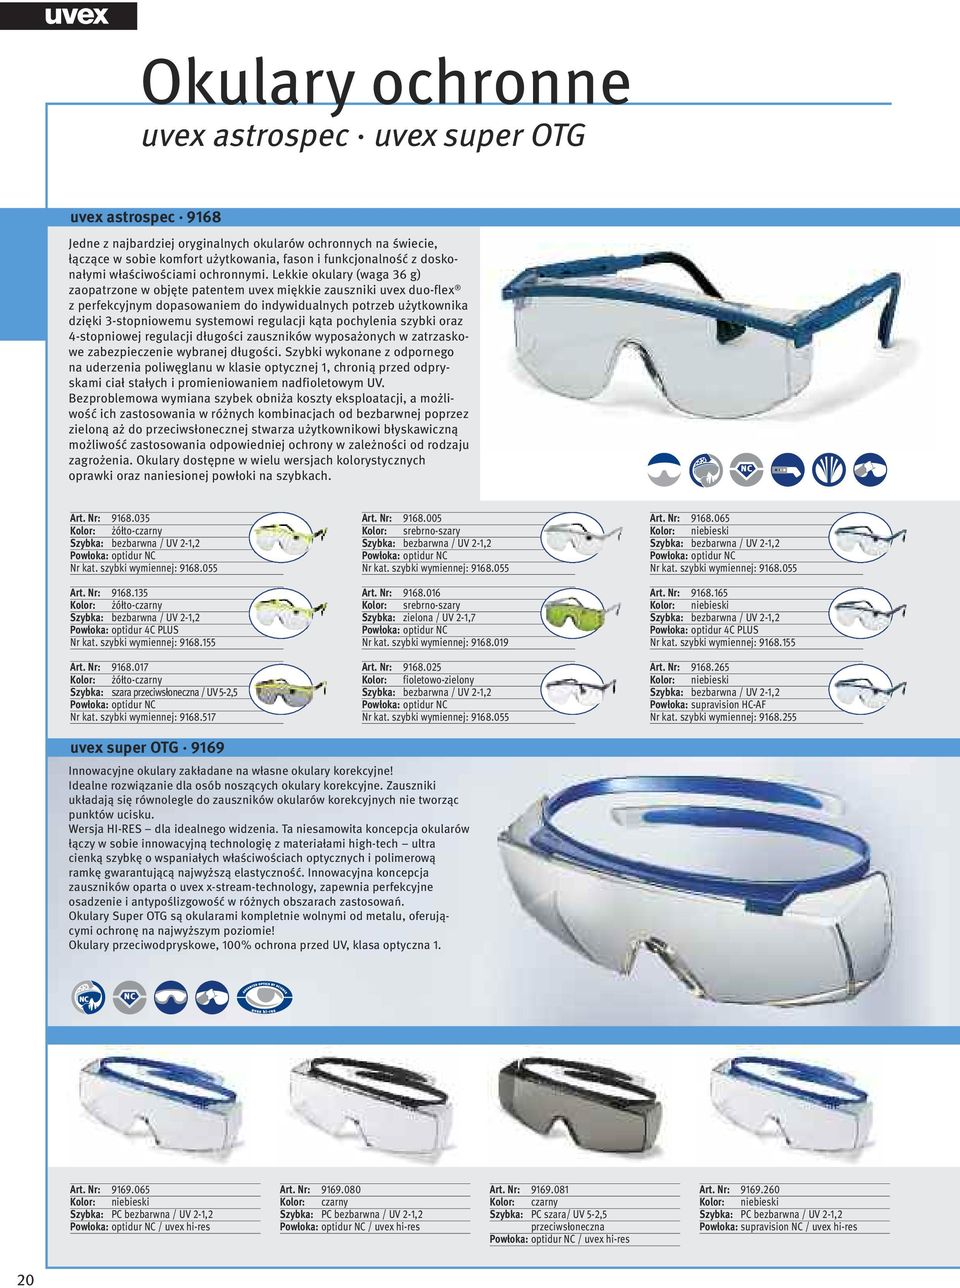 Lekkie okulary (waga 36 g) zaopatrzone w objęte patentem uvex miękkie zauszniki uvex duo-flex z perfekcyjnym dopasowaniem do indywidualnych potrzeb użytkownika dzięki 3-stopniowemu systemowi